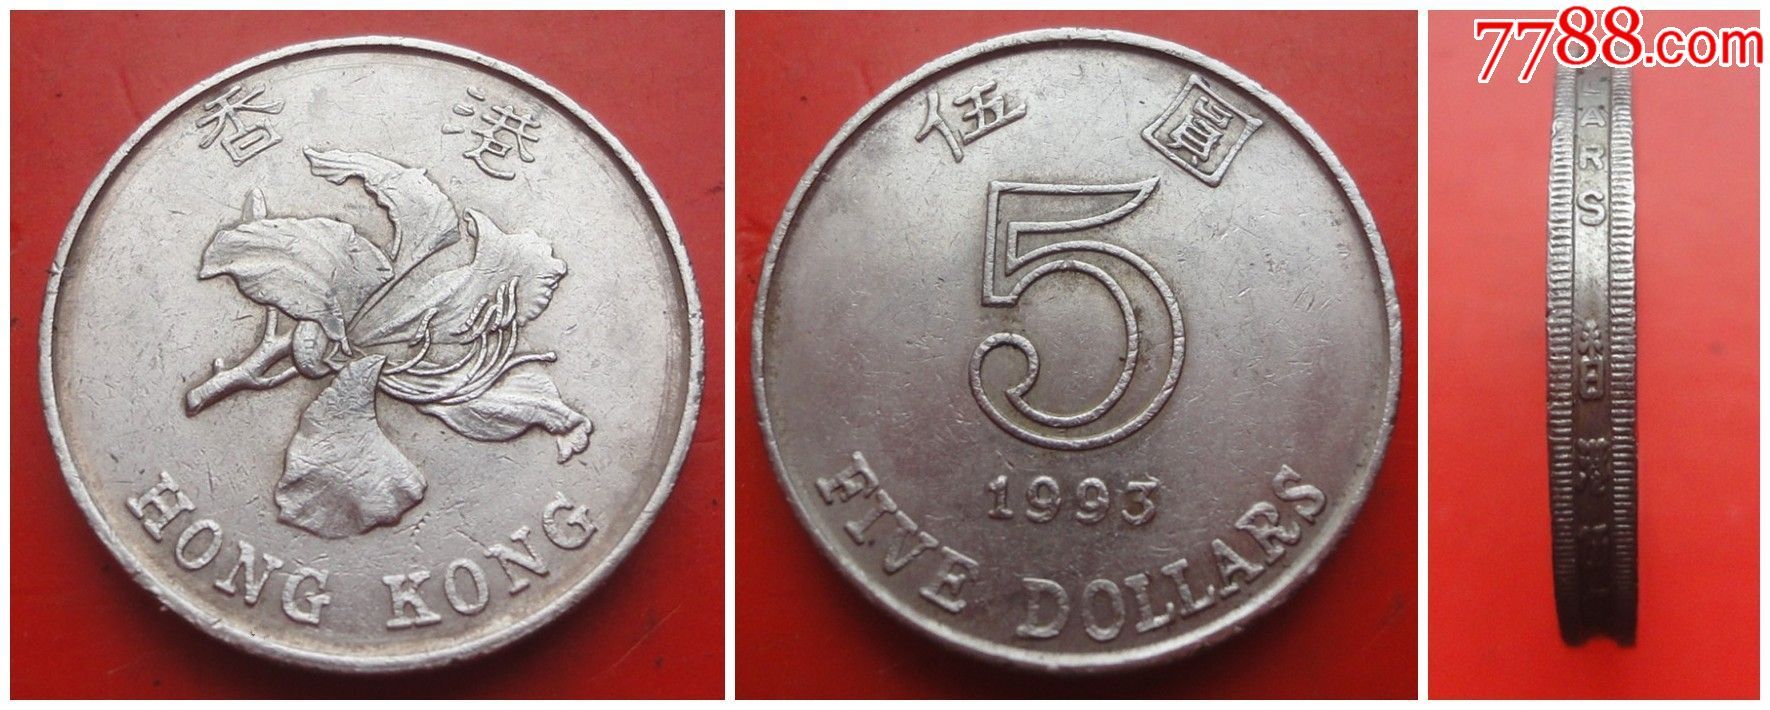 香港硬币1993年5元贰伍圆加厚3.2mm保真上品